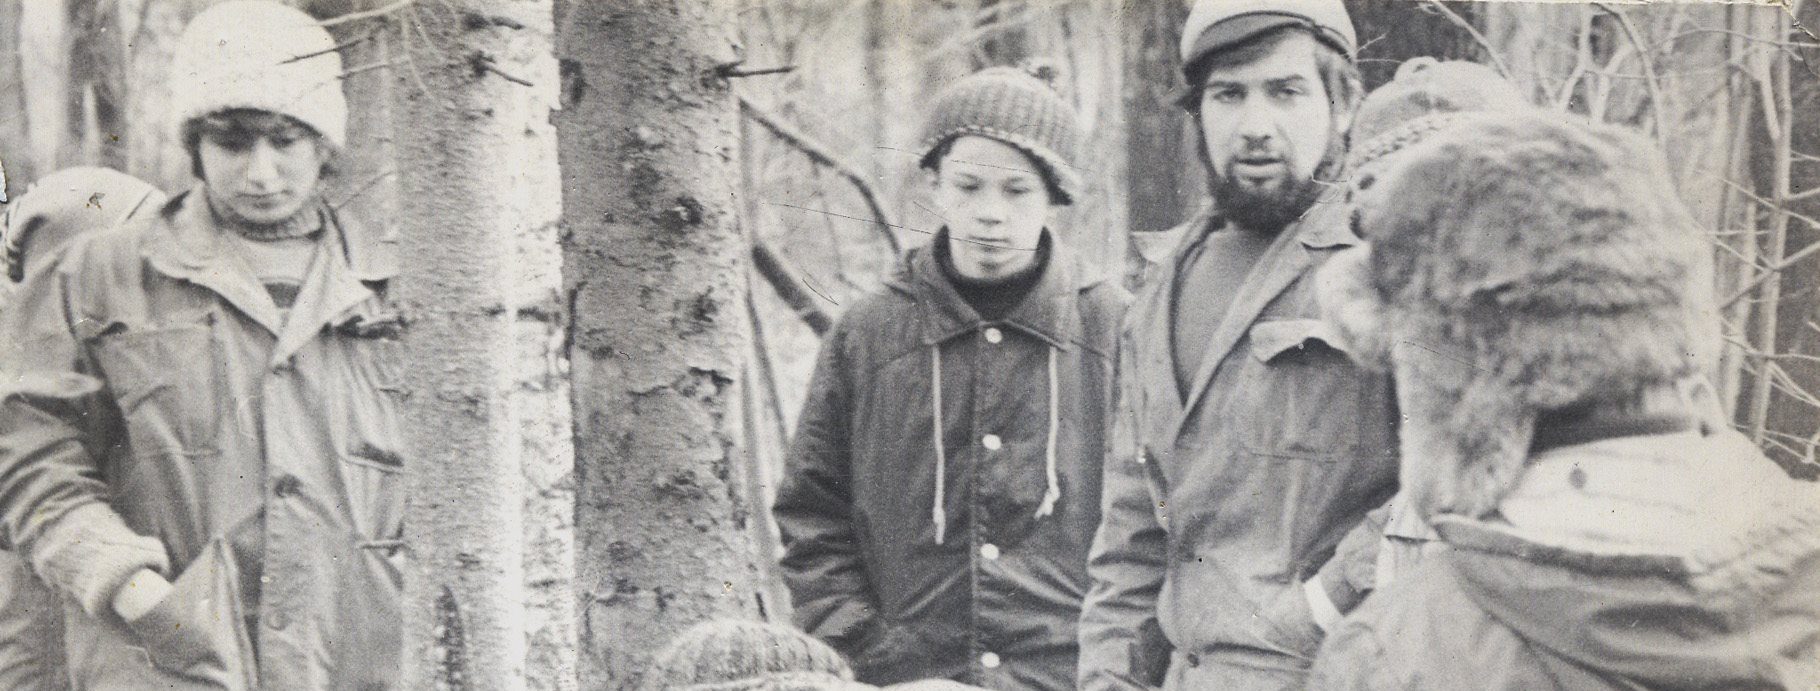 Зимняя экспедиция в Рождестве 1981 год. Описание